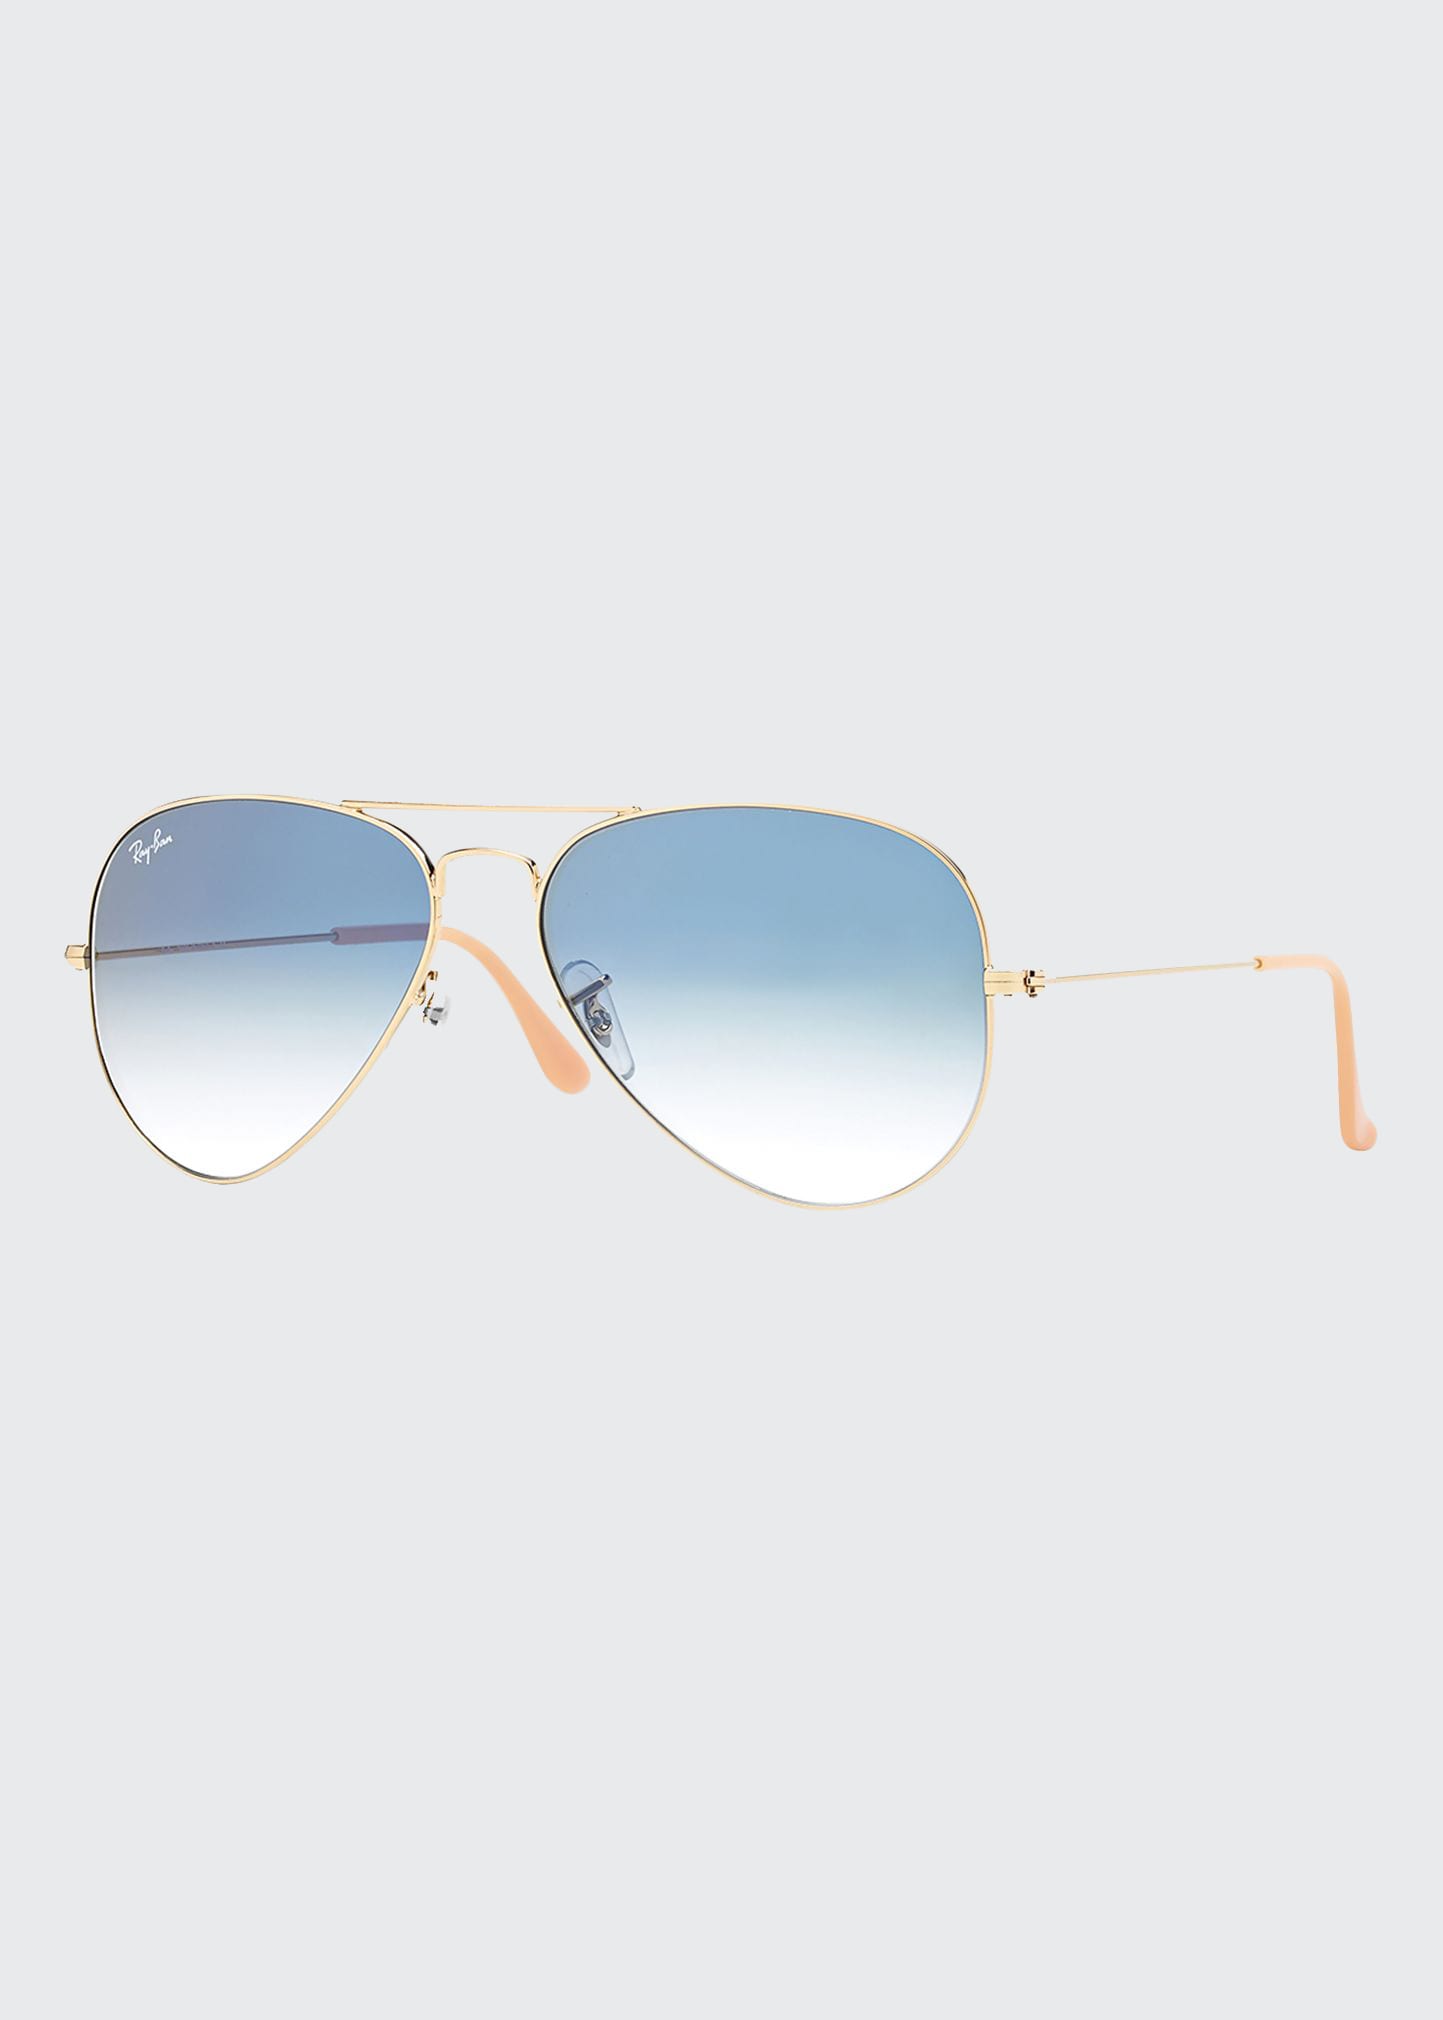 Original Aviator Sunglasses, Silver/Gray